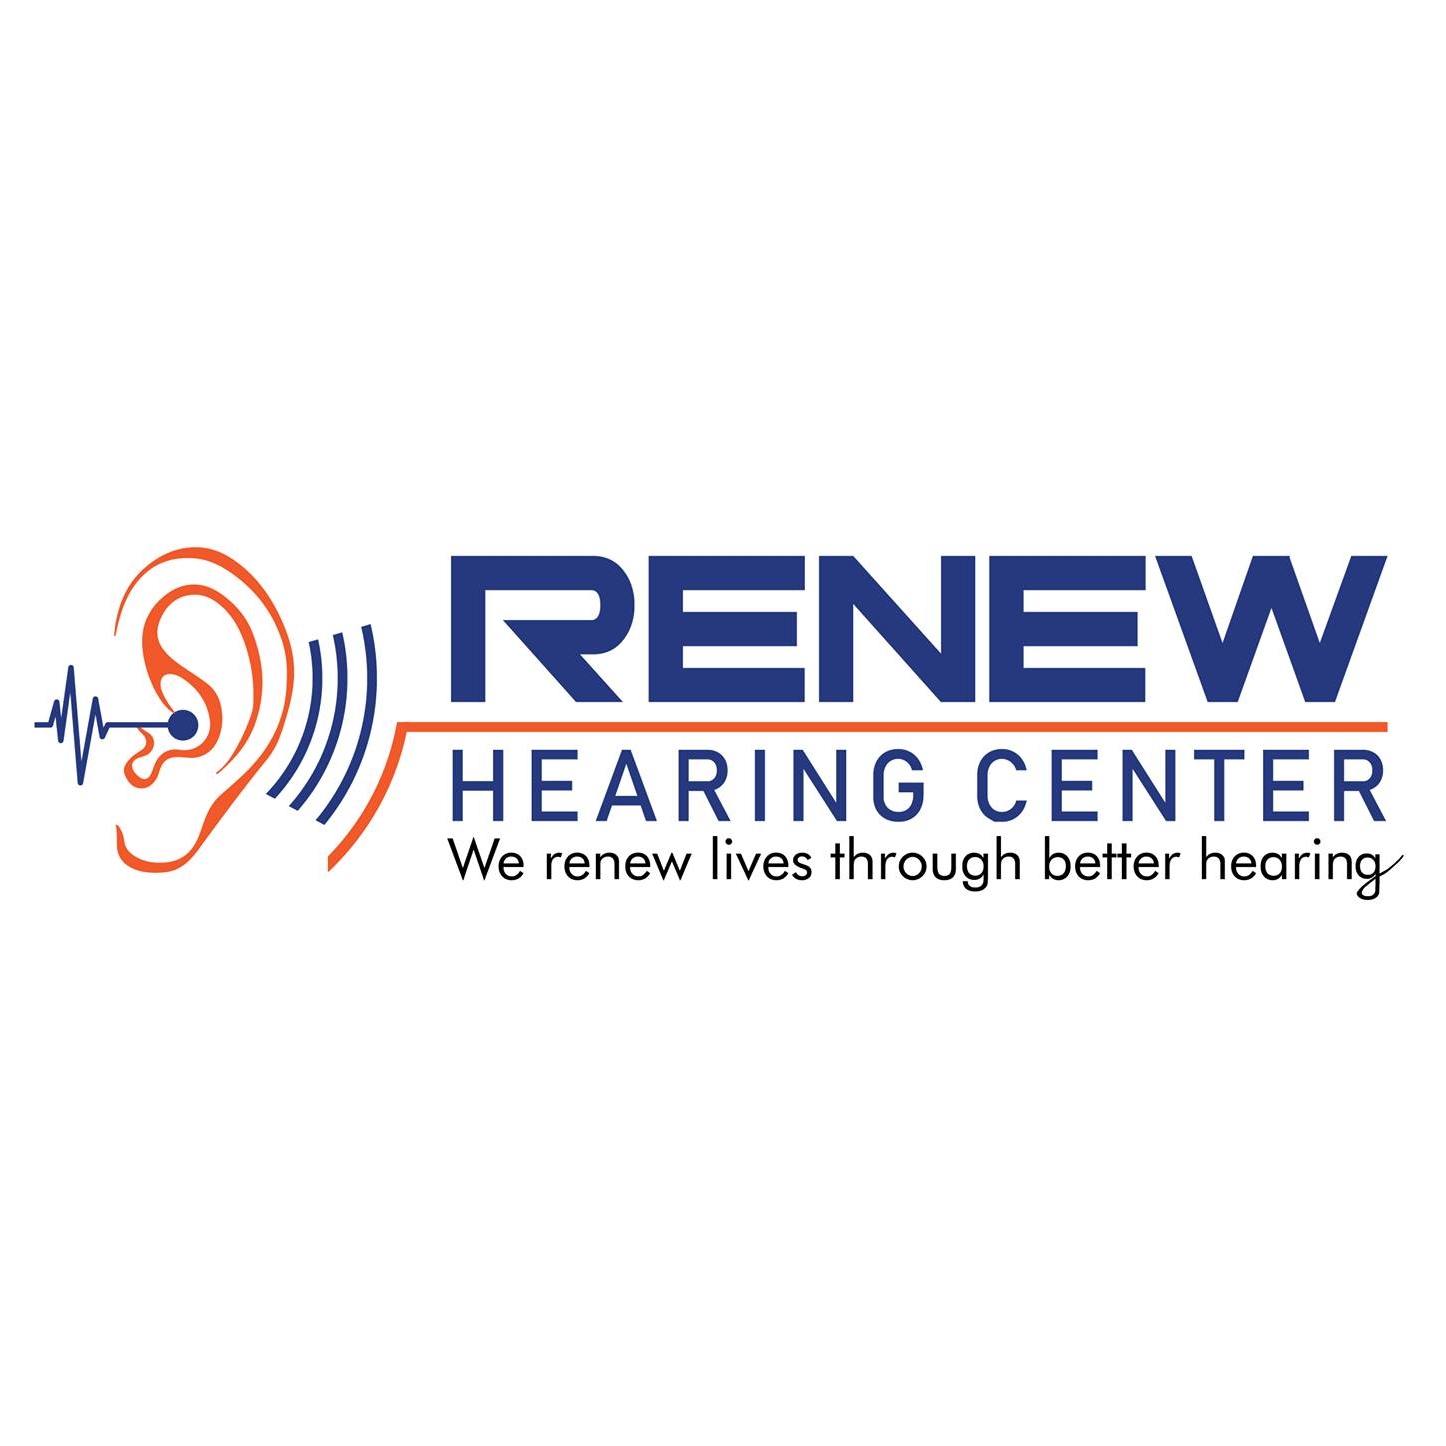 Hearing Centre in Panjagutta.,hyderabad,Hospitals,Public Hospitals,77traders